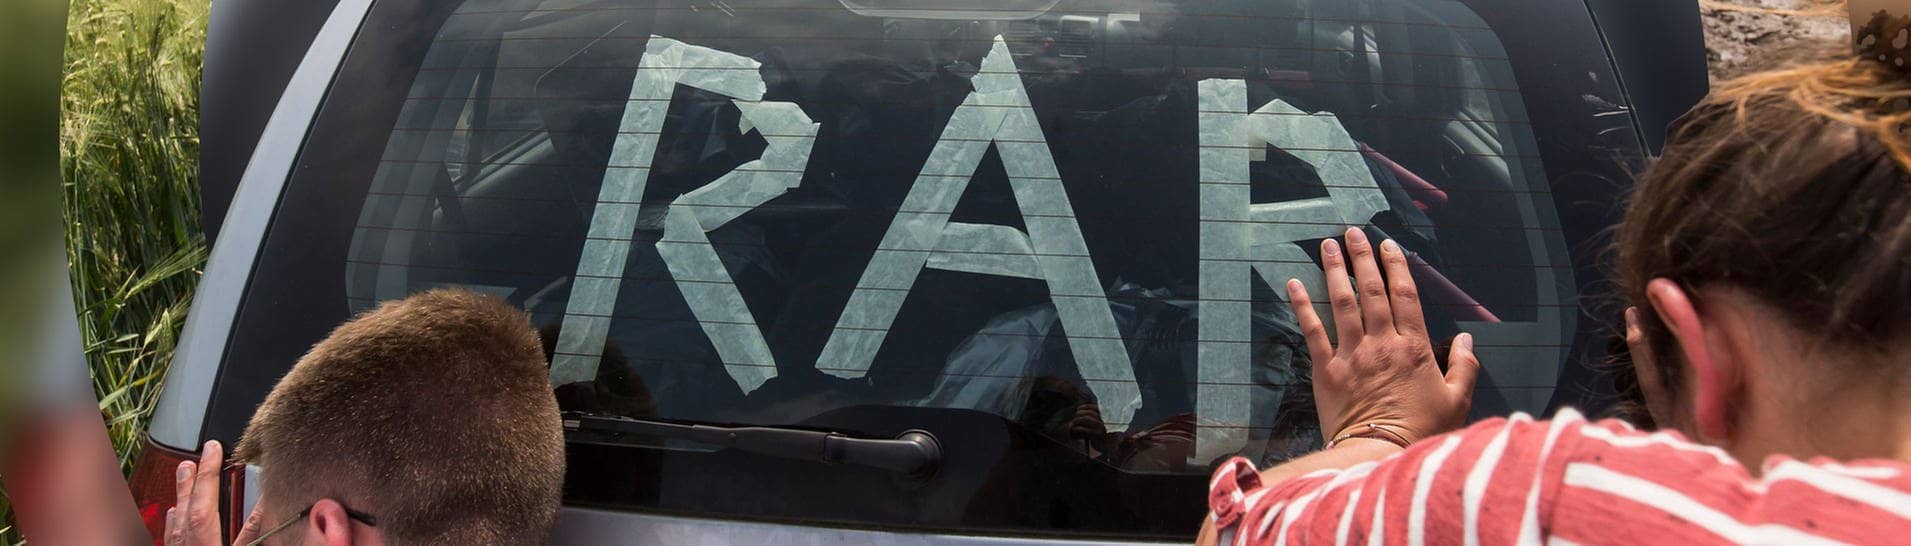 Rock am Ring: Zwei Menschen schieben ein Auto mit dem Schriftzug „RaR“.